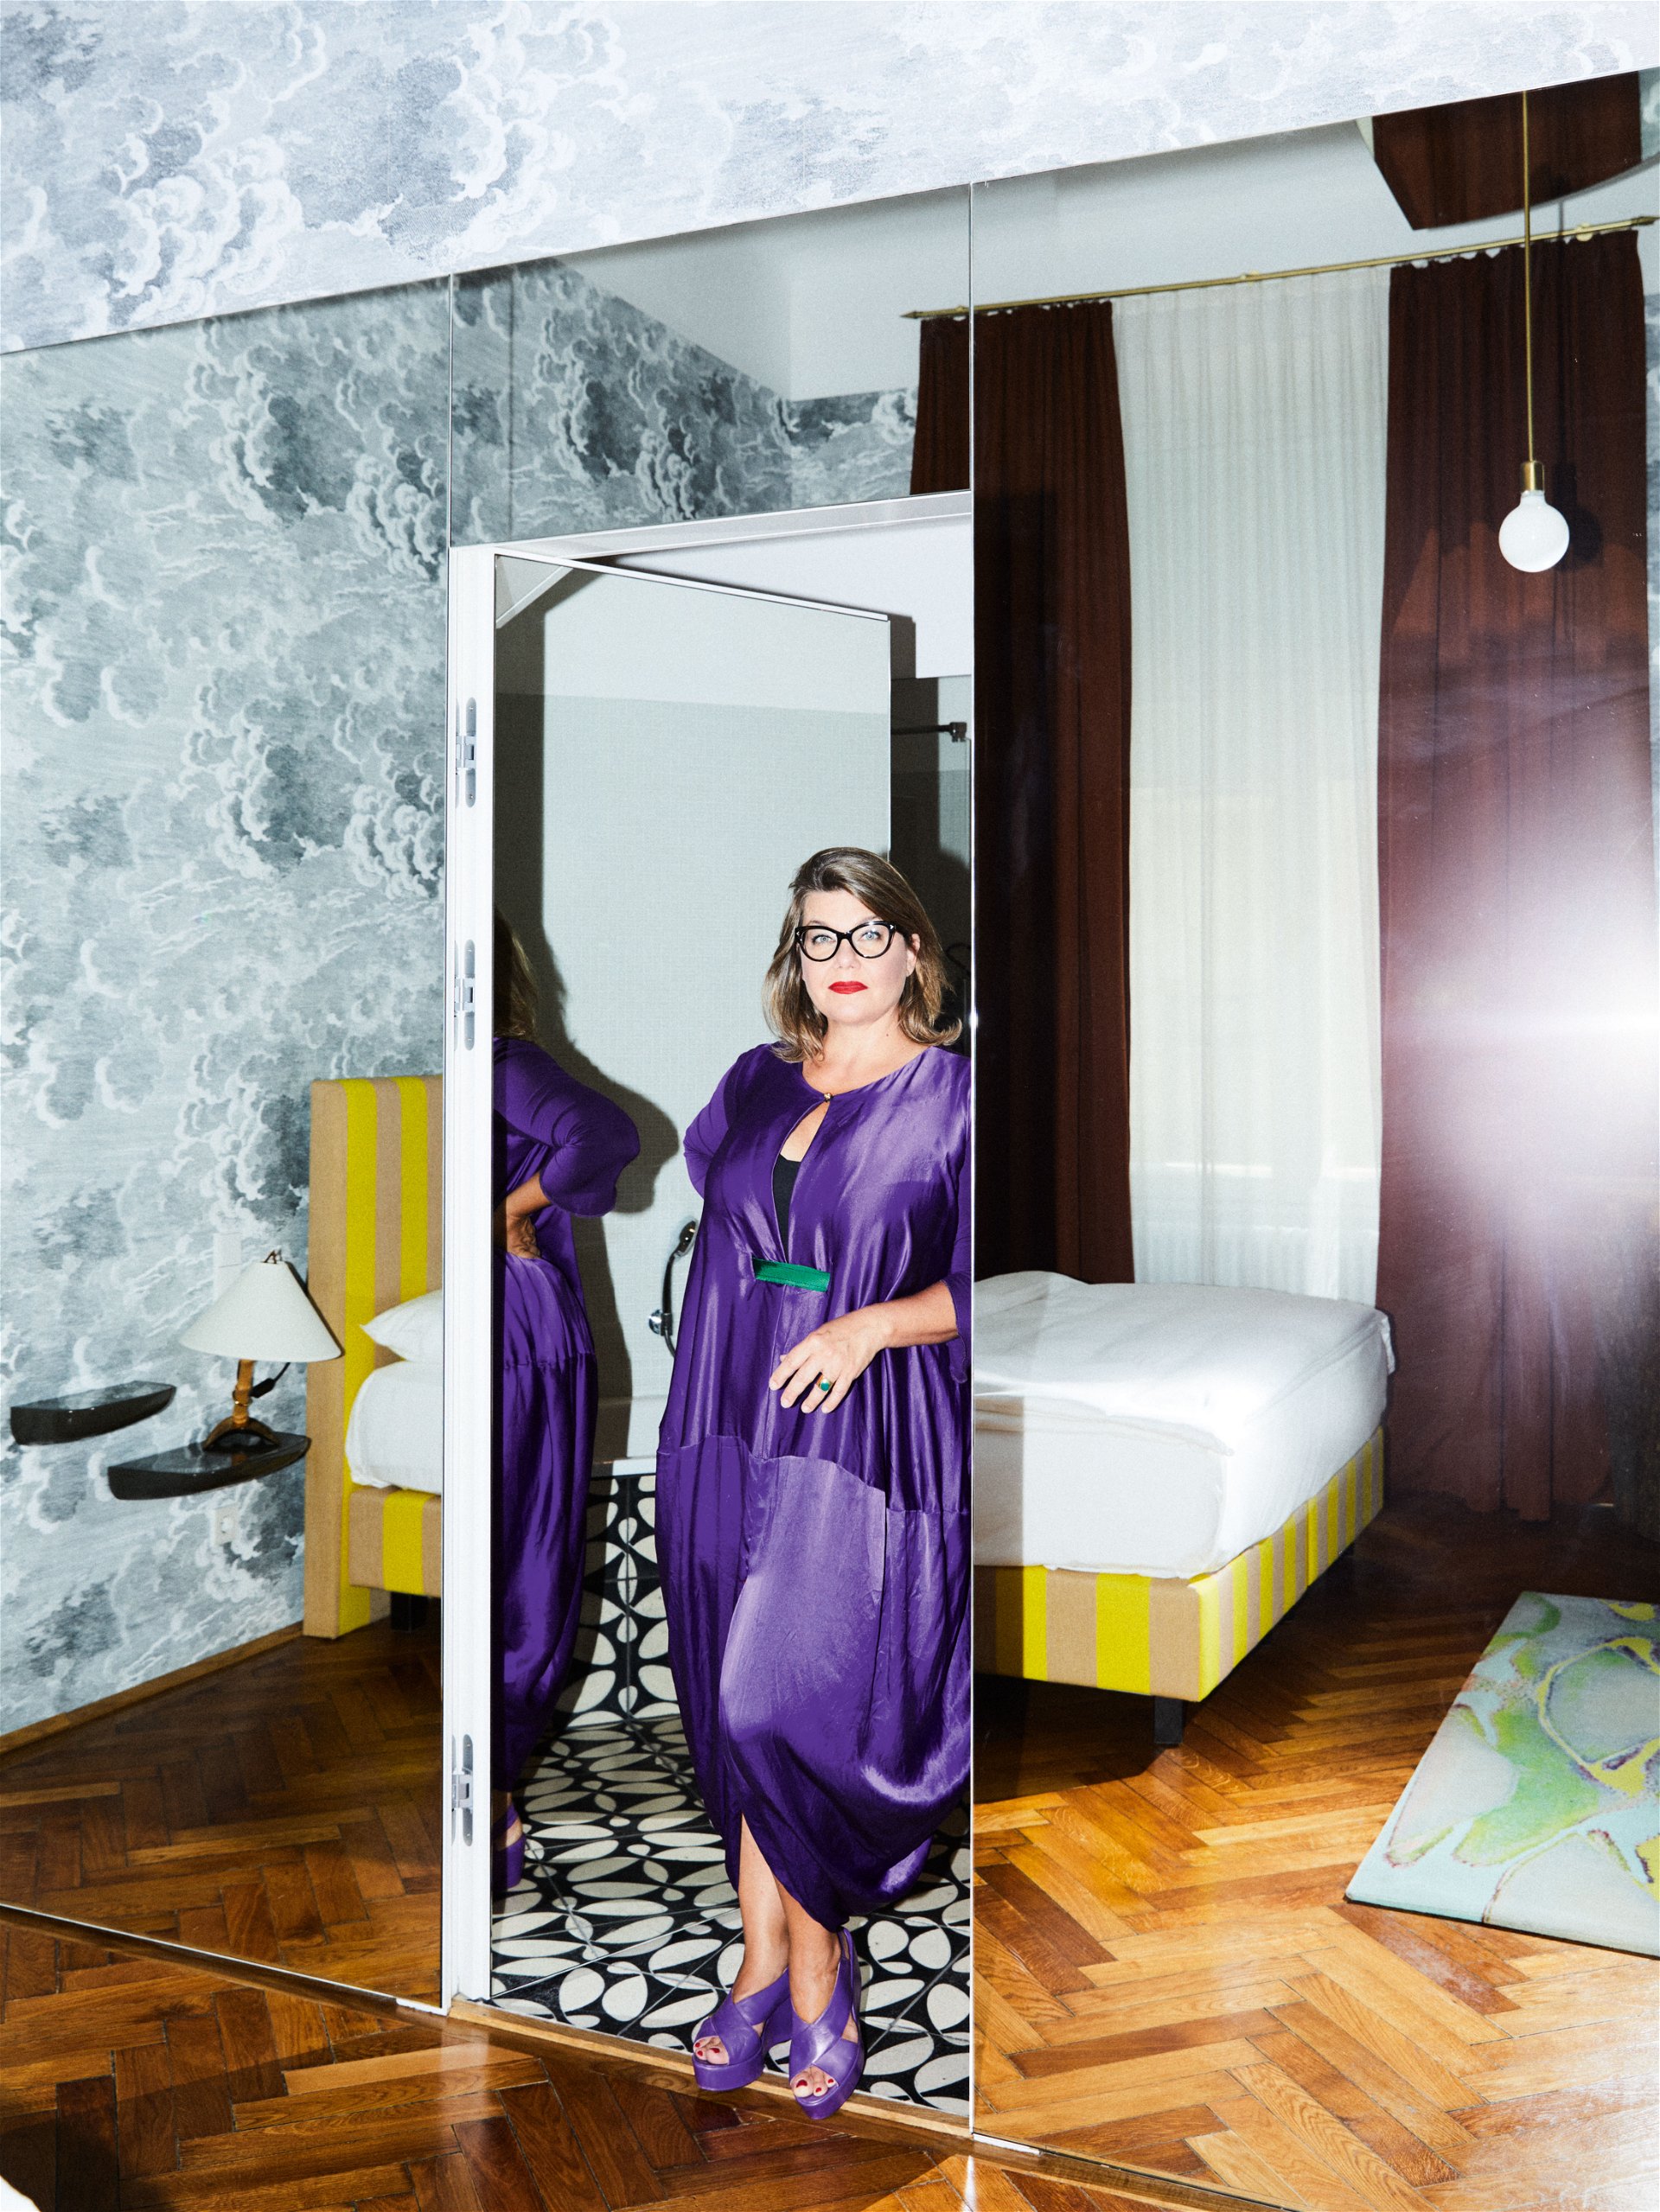 Leading Lady im MAK: Die neue MAK-Direktorin Lilli Hollein in einem extravaganten lila Outfit von Wendy & Jim in ihrer Suite im Hotel Altstadt. Vienna. altstadt.at